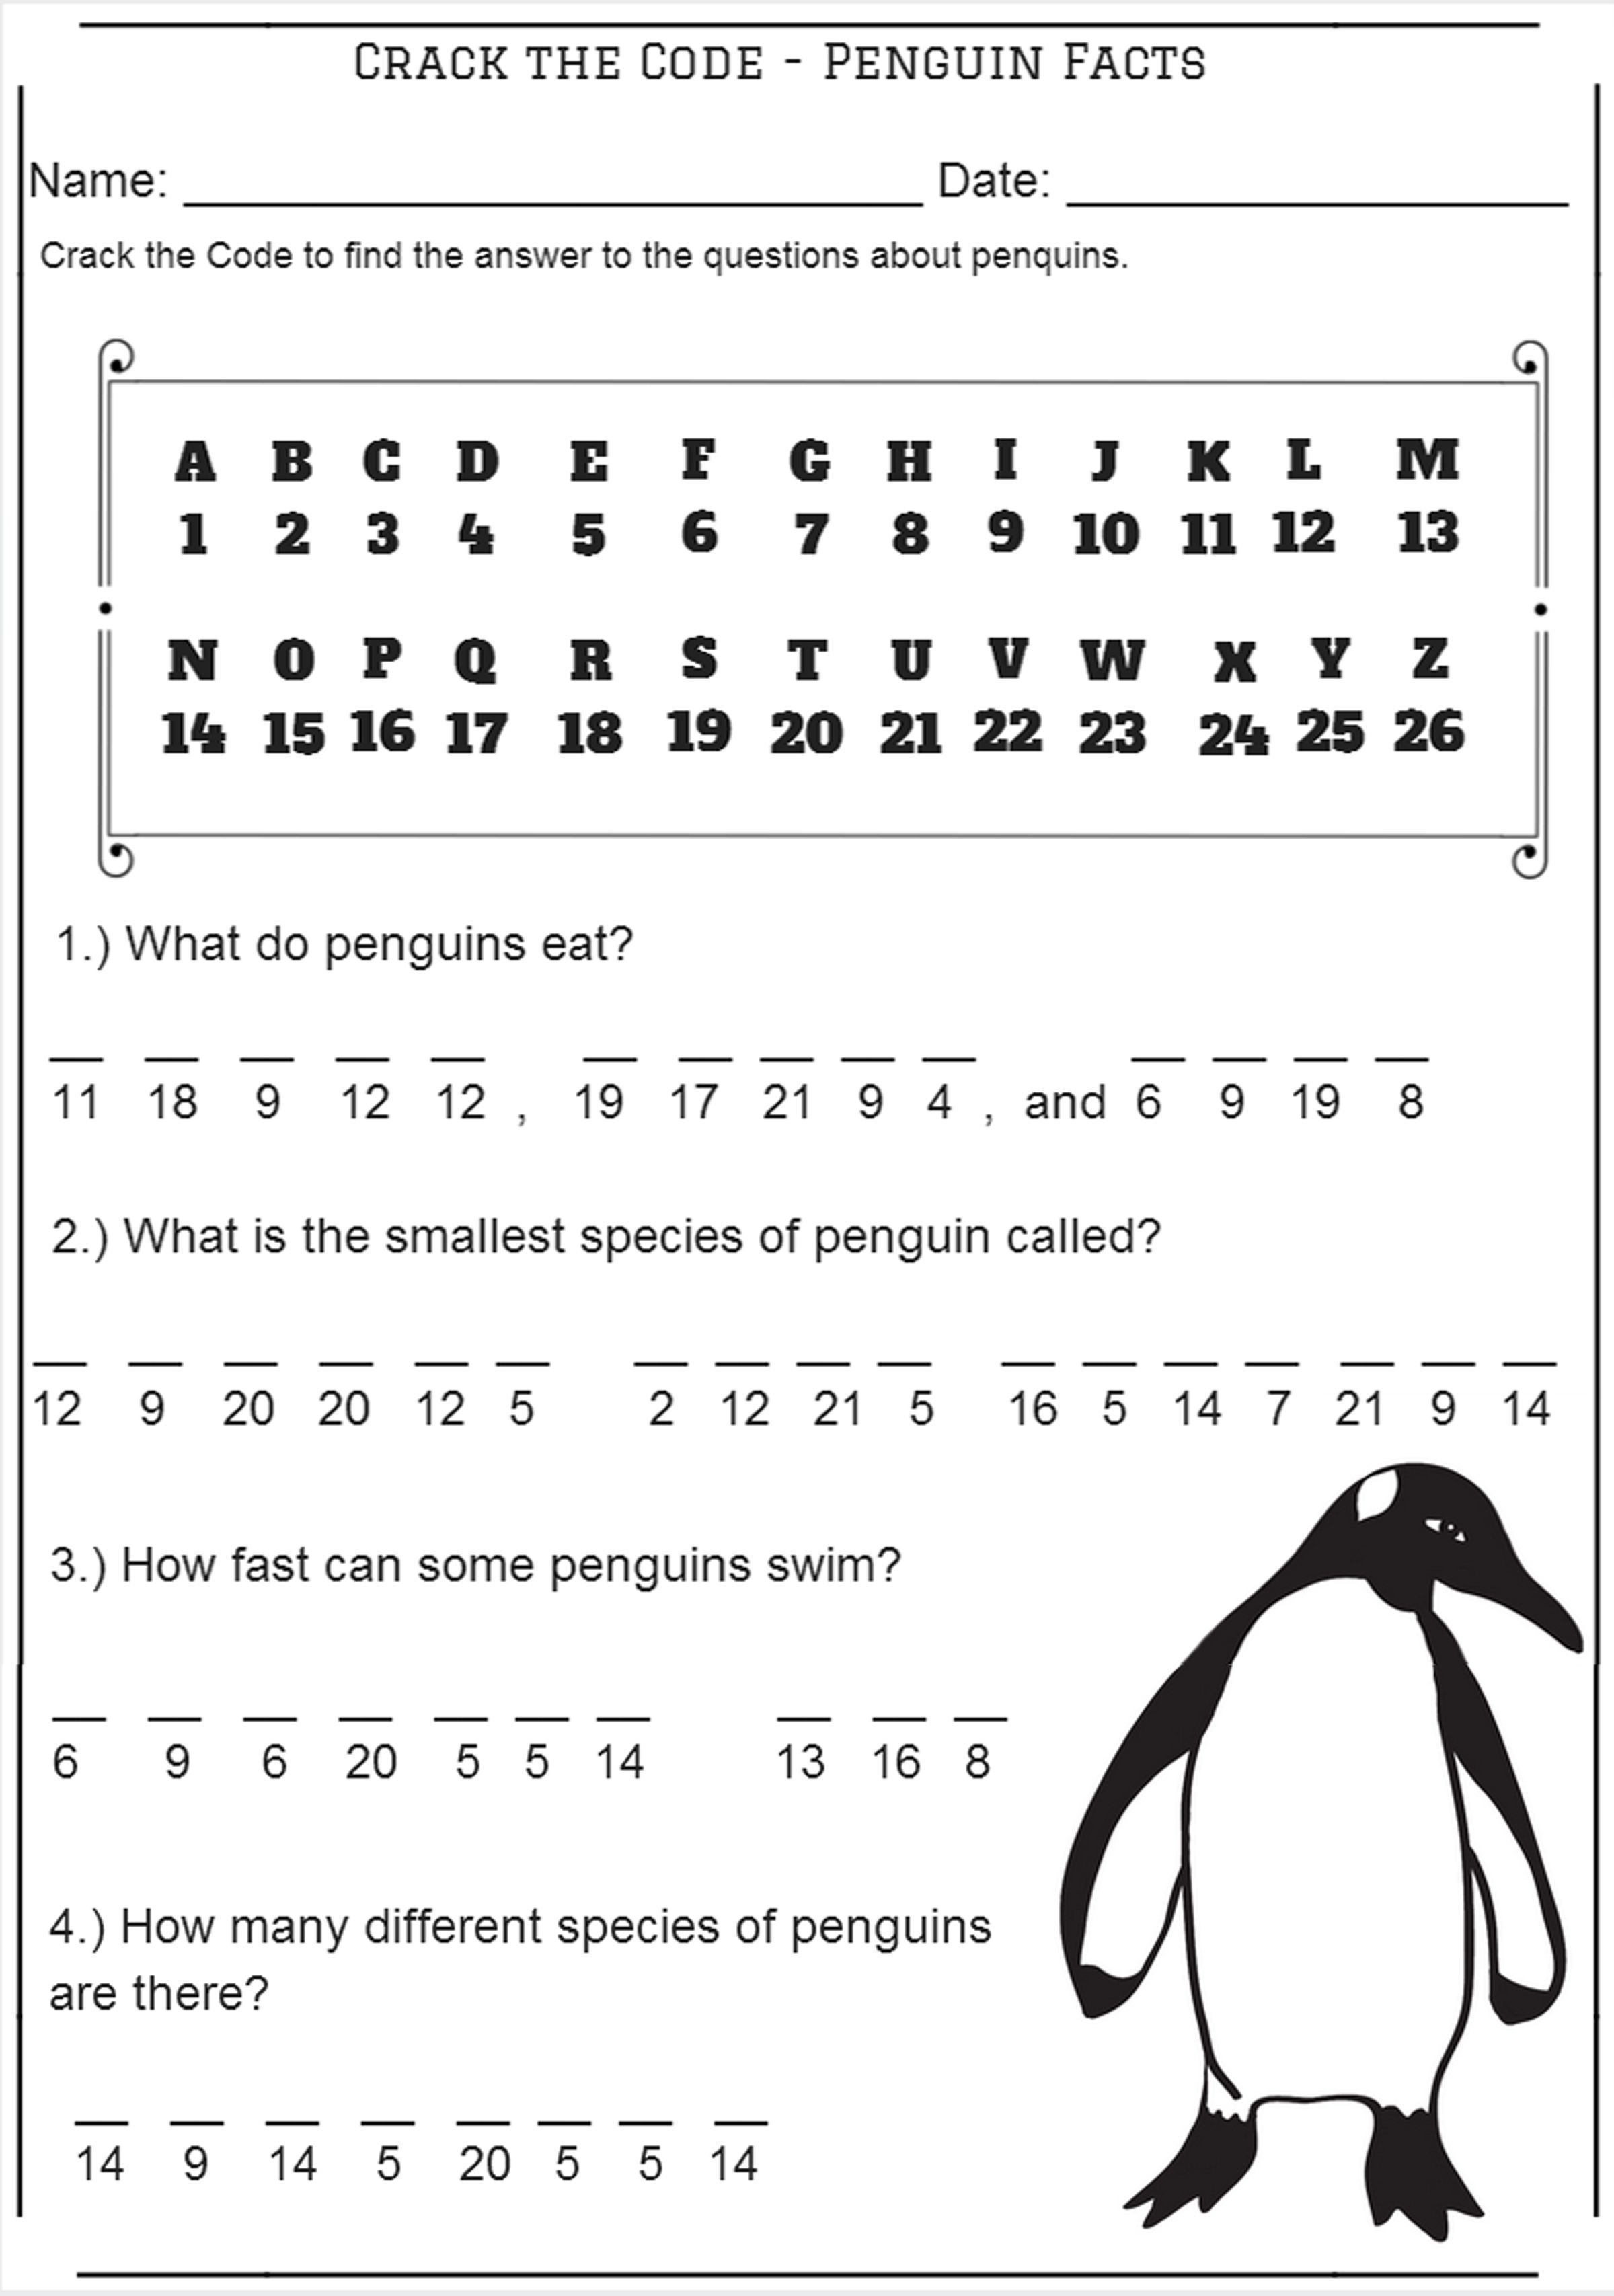 Crack The Code - Penguin Facts - Codebreaker Worksheet | Free - Crack The Code Worksheets Printable Free